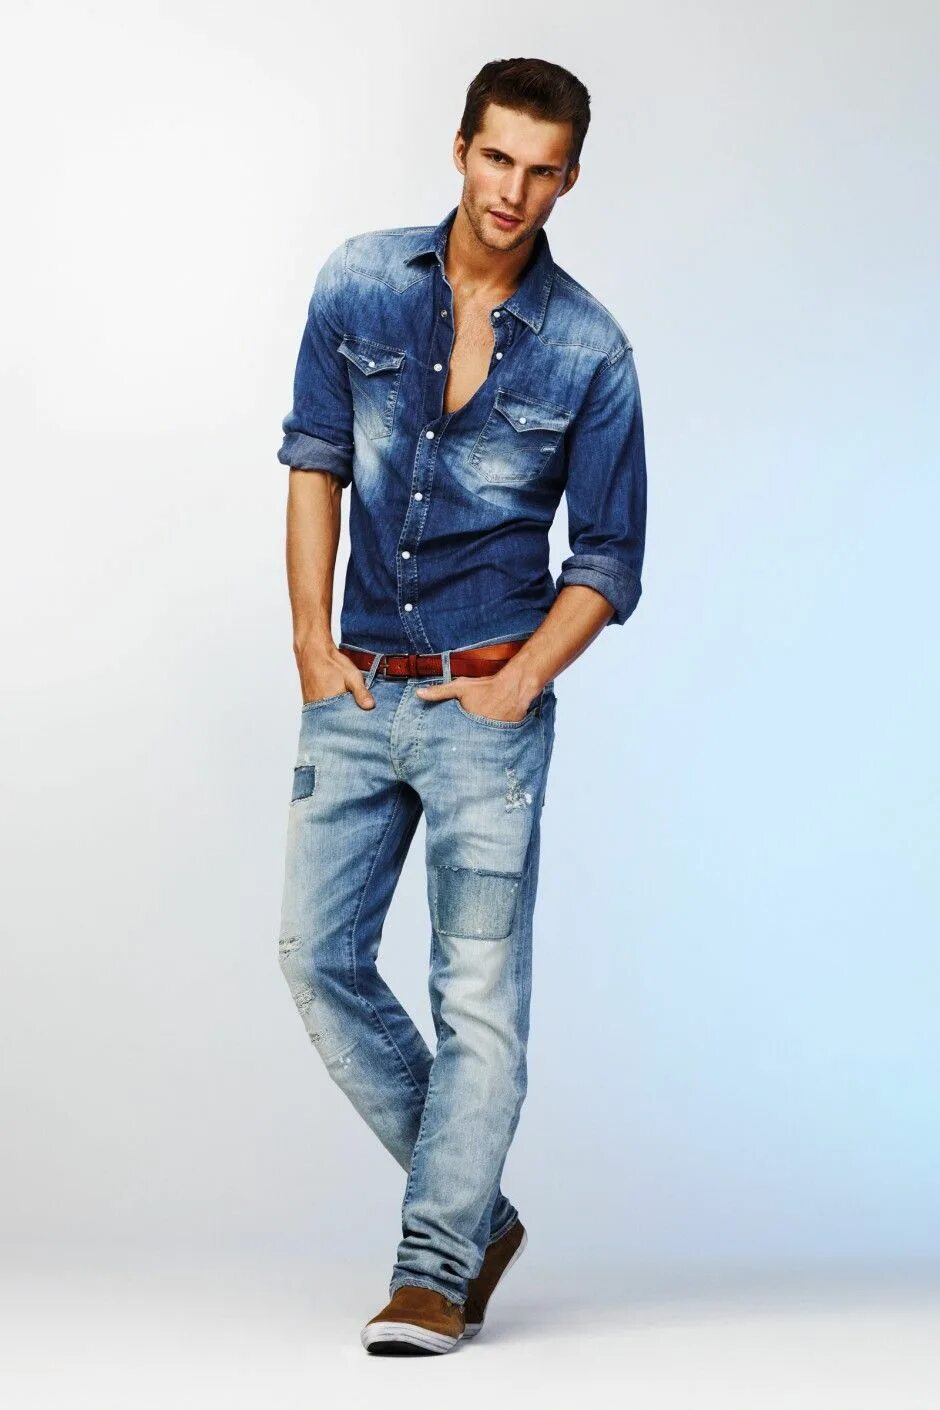 Pepe Jeans Shirt men. Мужчина в джинсах. Джинсовый стиль мужской. Мужчина в джинсе. Jeans wear 3